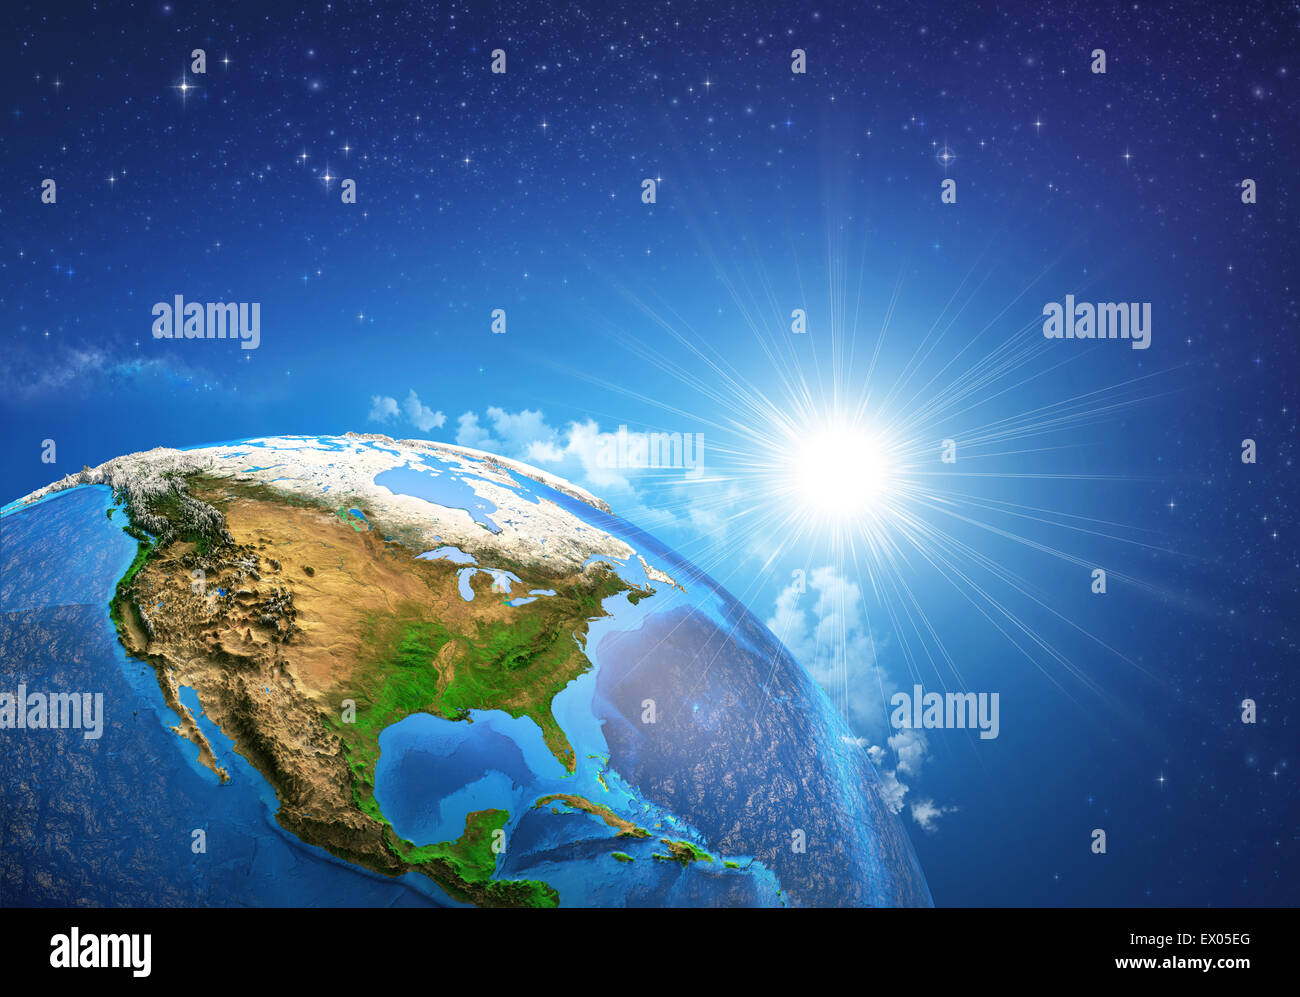 Soleil levant sur la terre et ses reliefs, avis des États-Unis d'Amérique. Éléments de cette image fournie par la NASA Banque D'Images